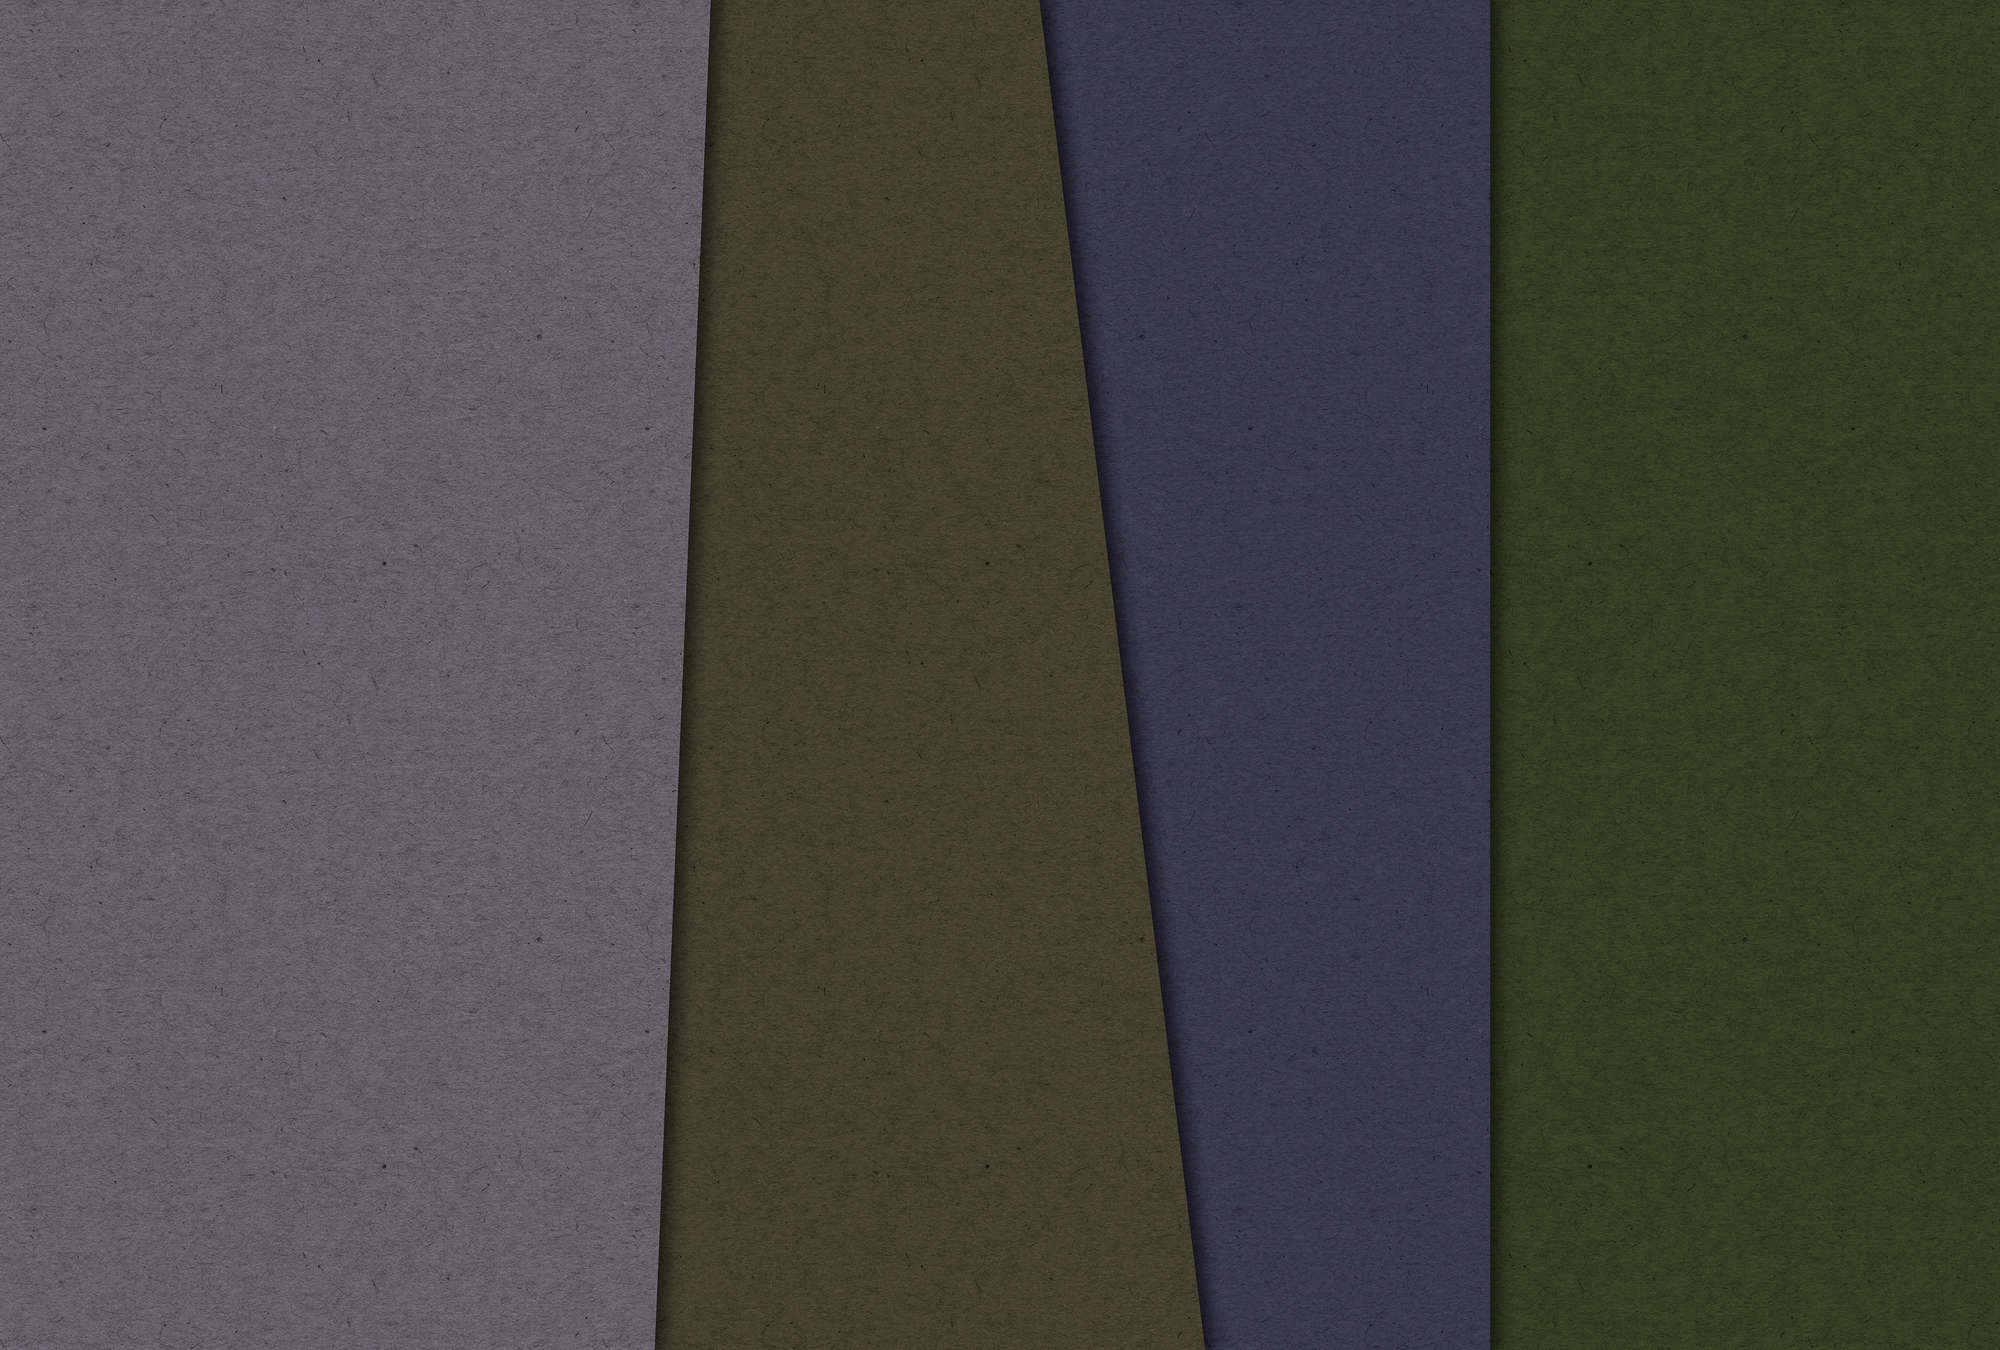             Layered Cardboard 3 - Fototapete minimalistisch & abstrakt- Pappe Struktur – Grün, Violett | Premium Glattvlies
        